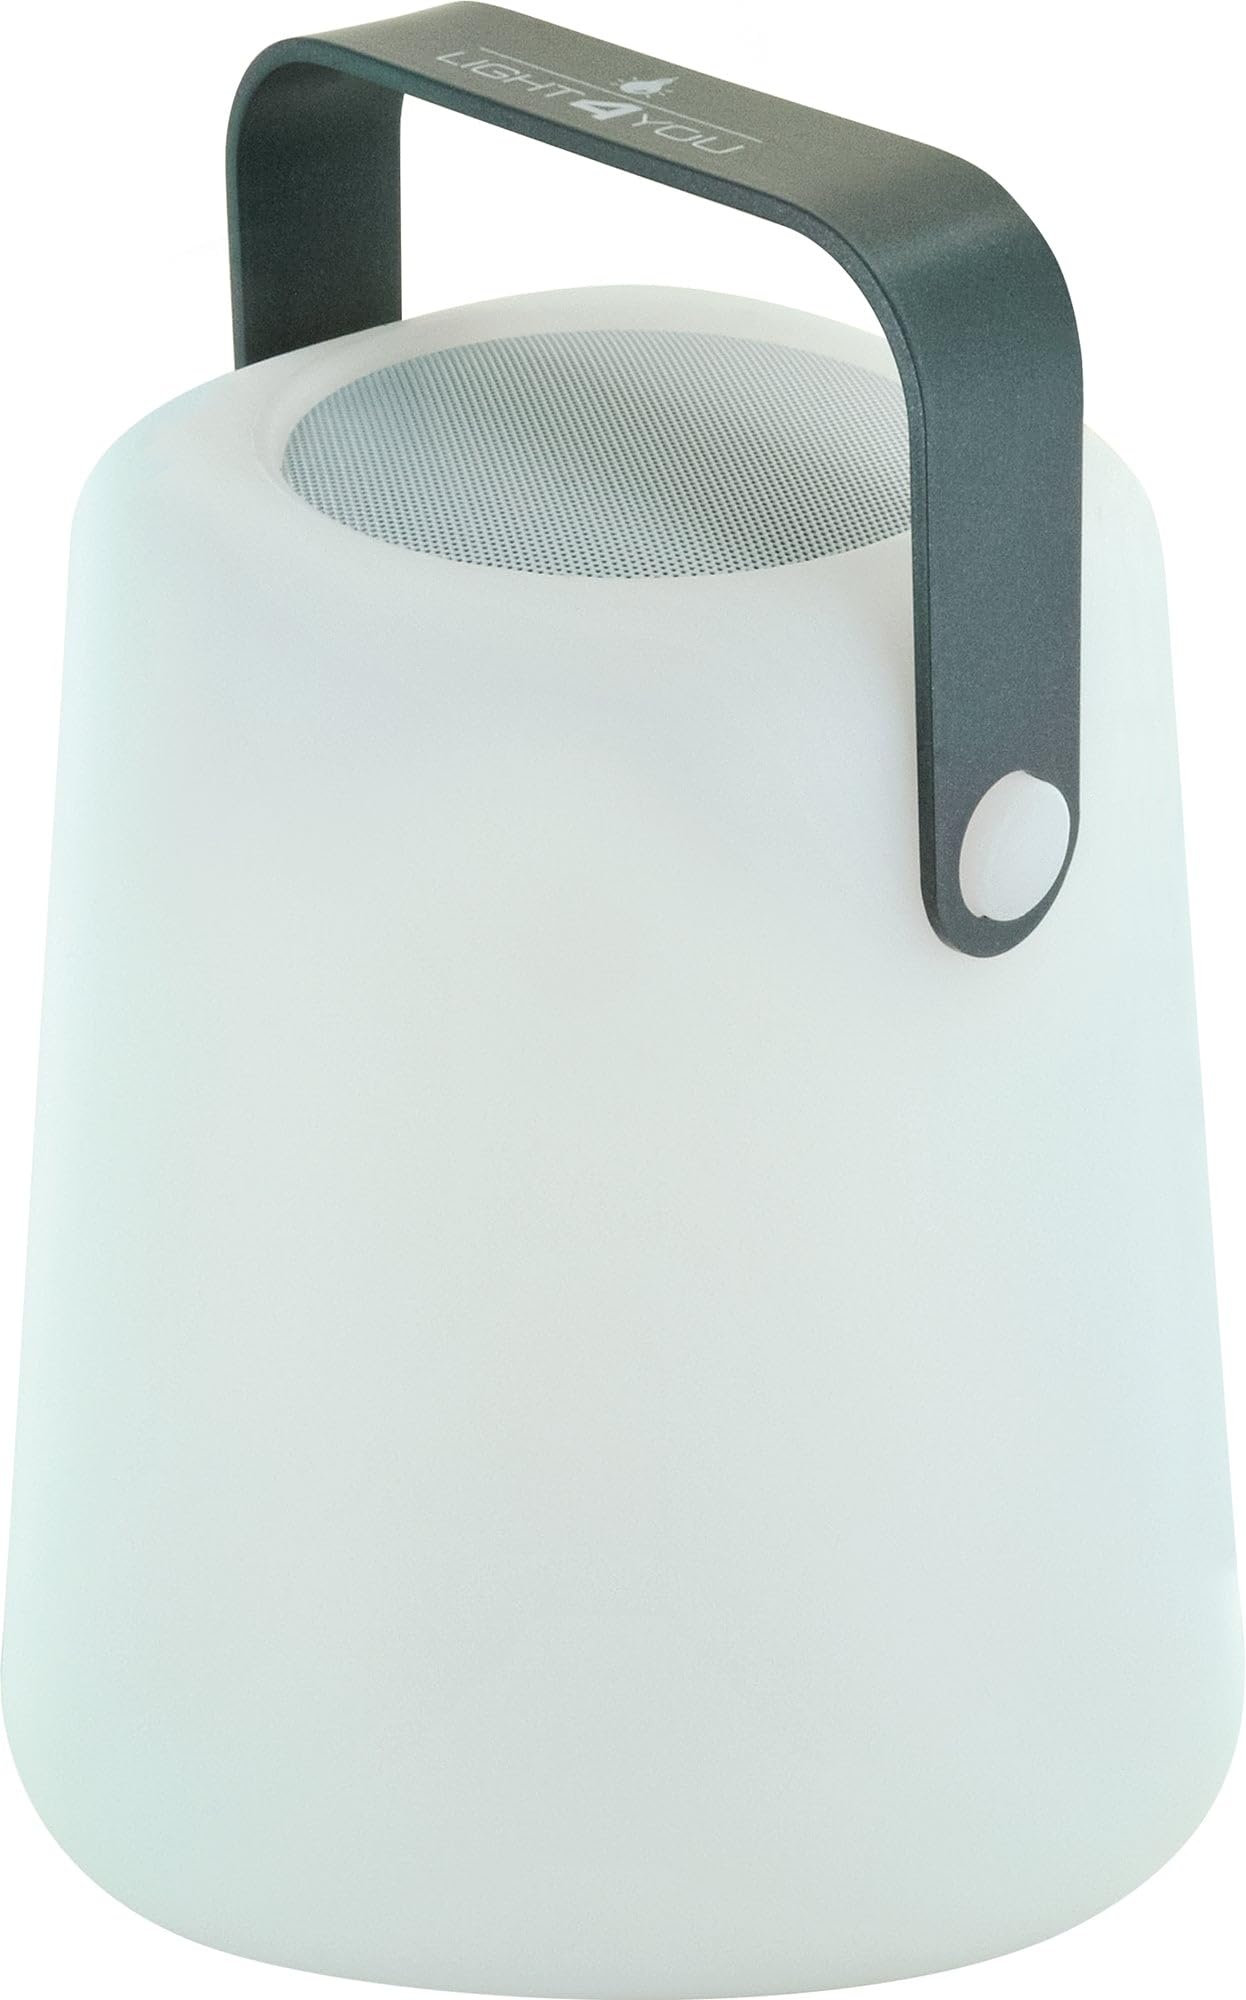 SCHWAIGER 661767 Tragbare Tischleuchte Bluetooth Lautsprecher Akku RGB LED Nachttischlampe Außenlicht Outdoor Gartenlampe Musiklautsprecher Henkel 10W spritzwassergeschützt